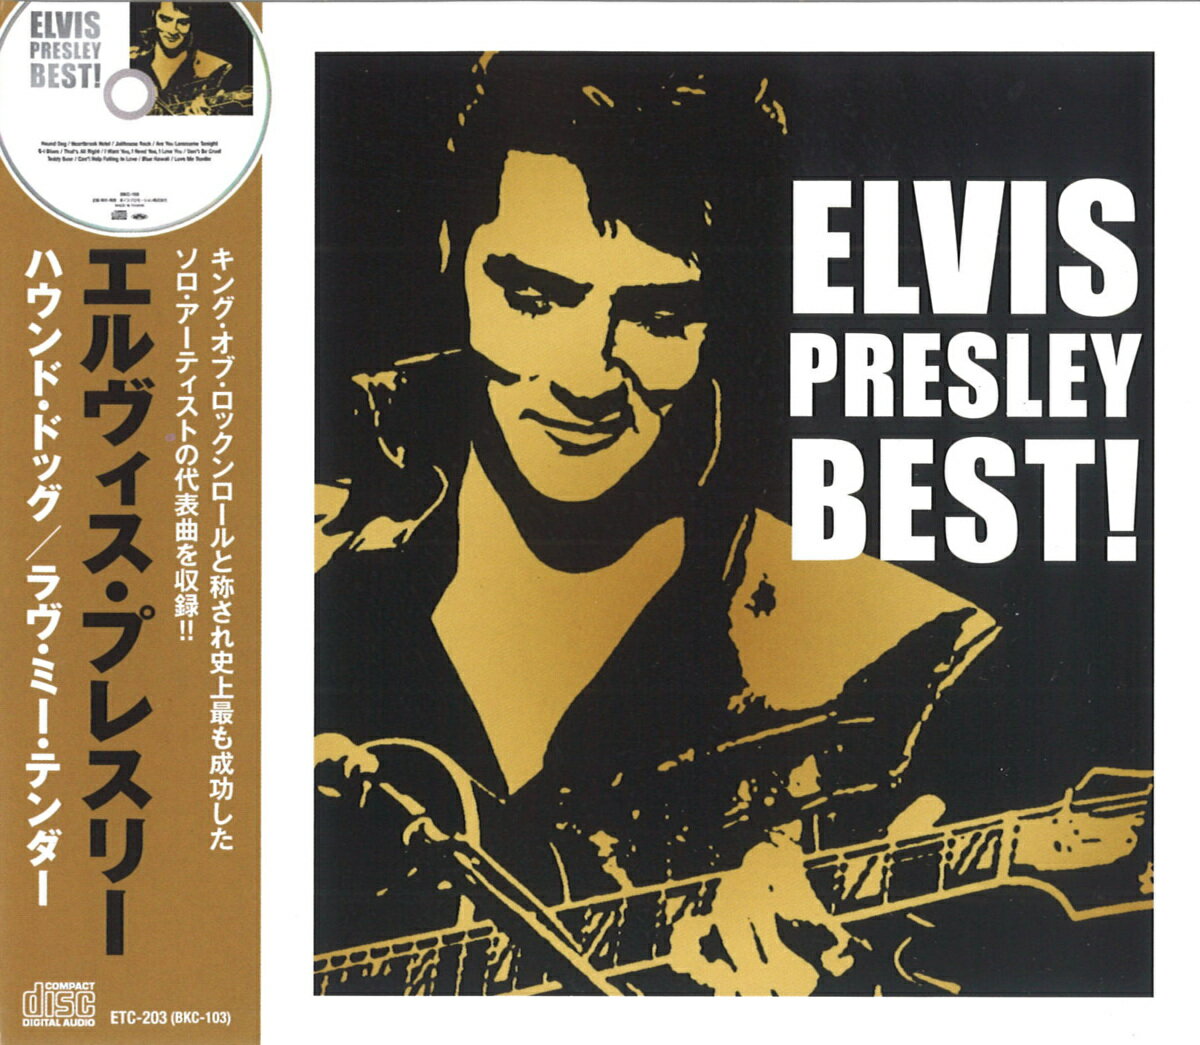 【新品/ラッピング無料/送料無料】エルヴィス・プレスリー BEST CD